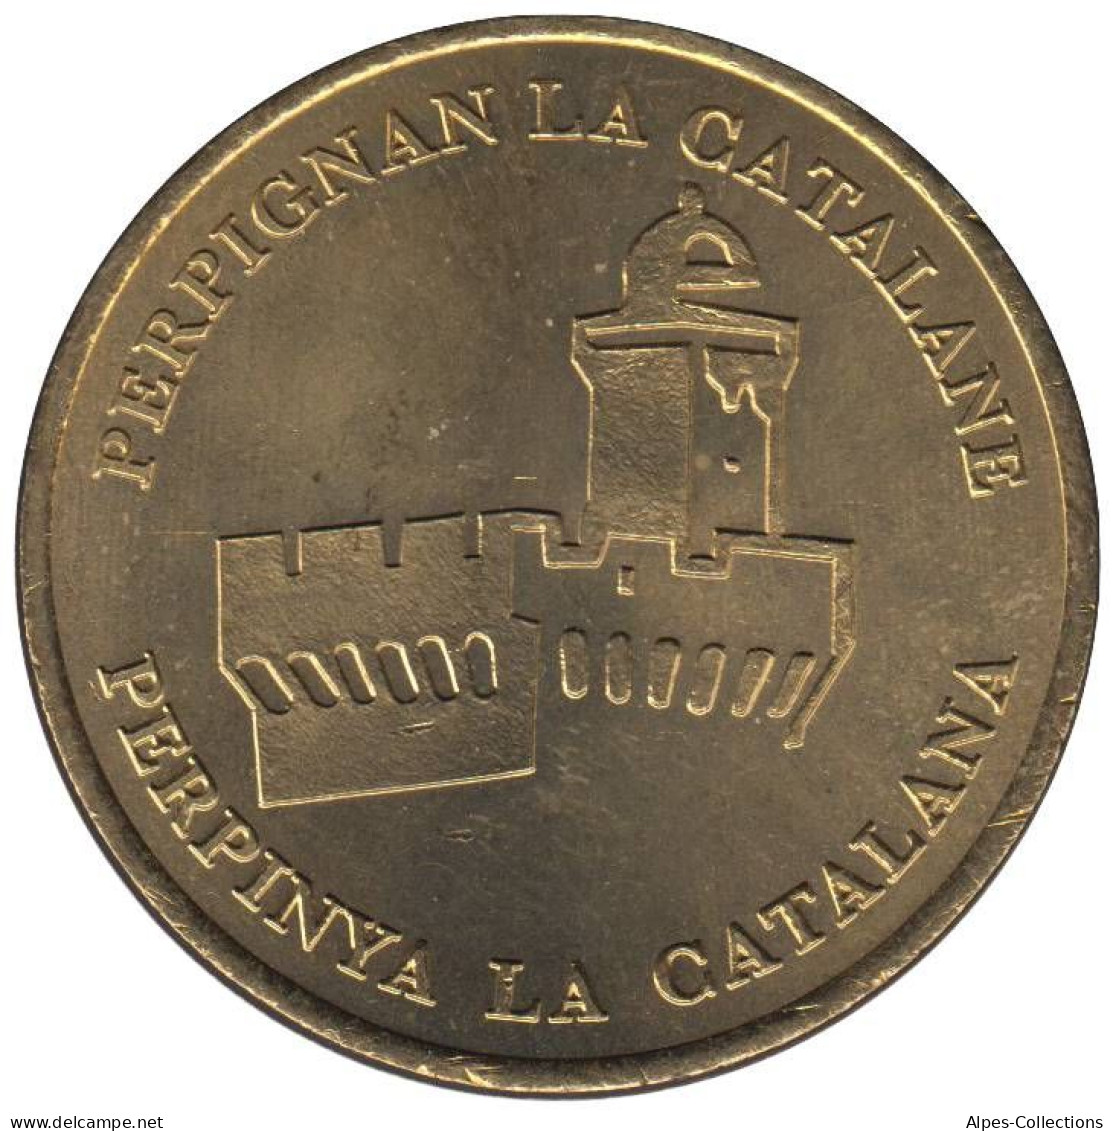 PERPIGNAN - EU0010.2 - 1 EURO DES VILLES - Réf: T538 - 1998 - Euros De Las Ciudades